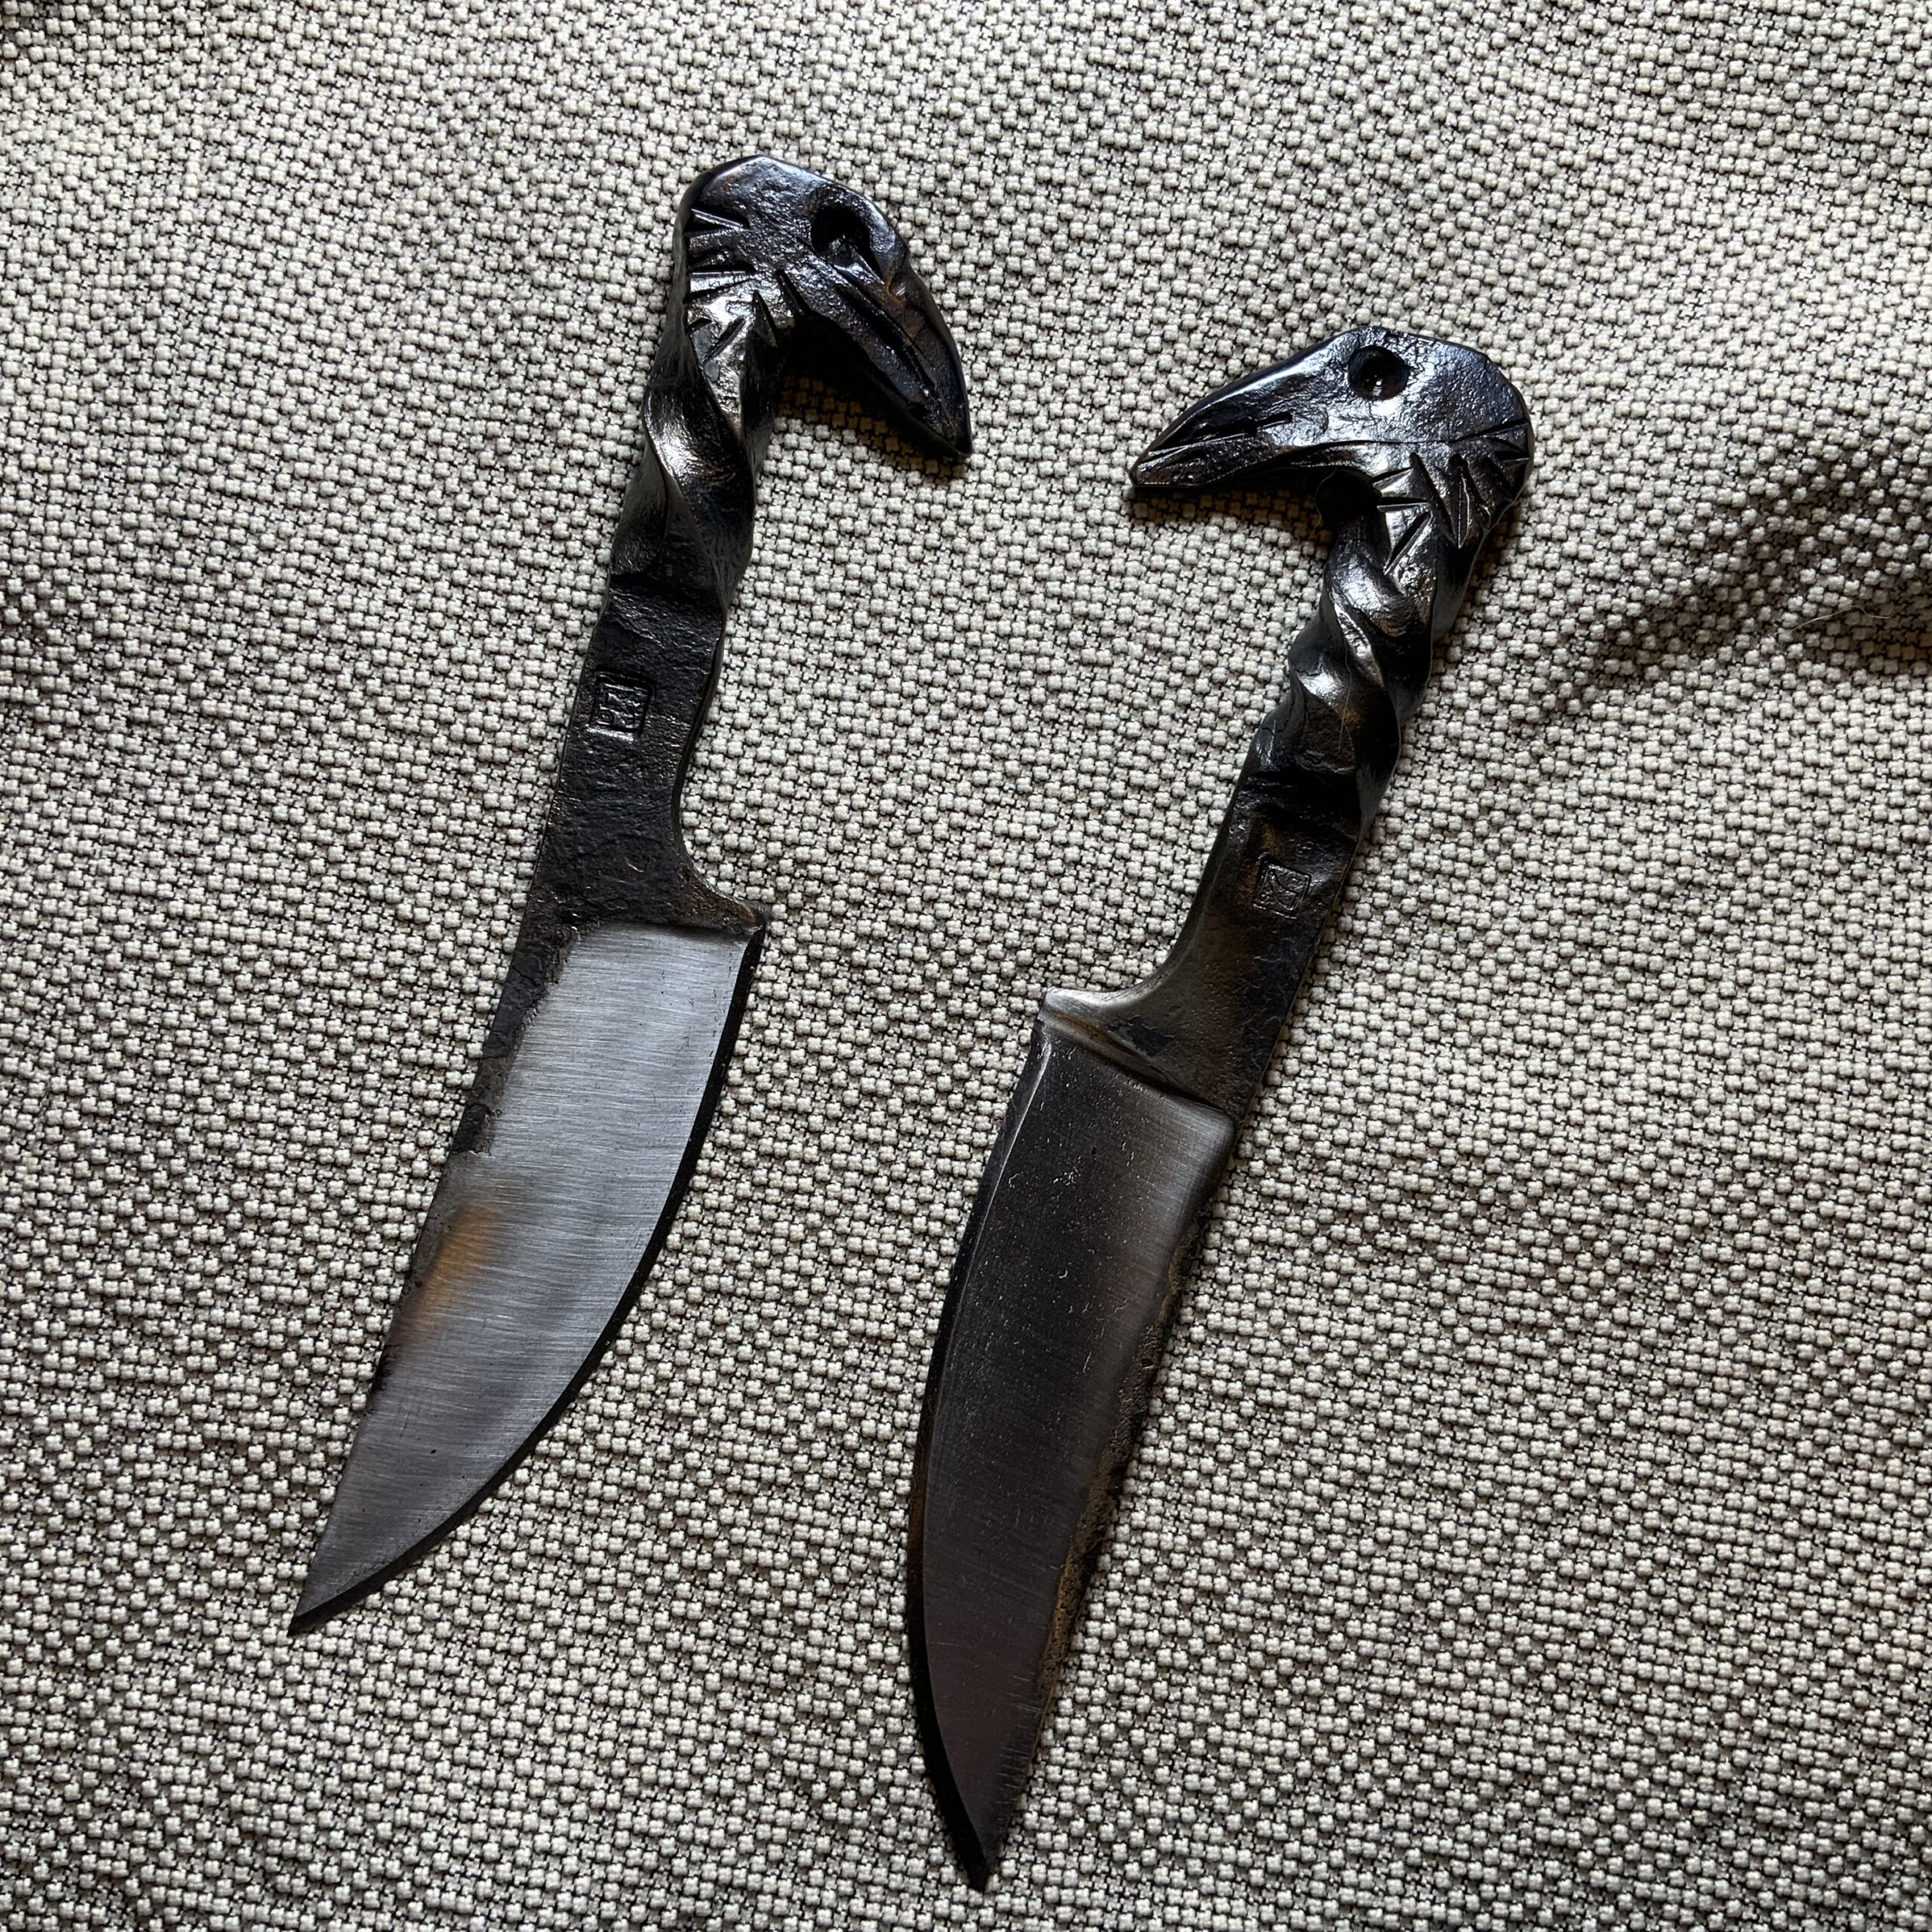 Raven Head Knife